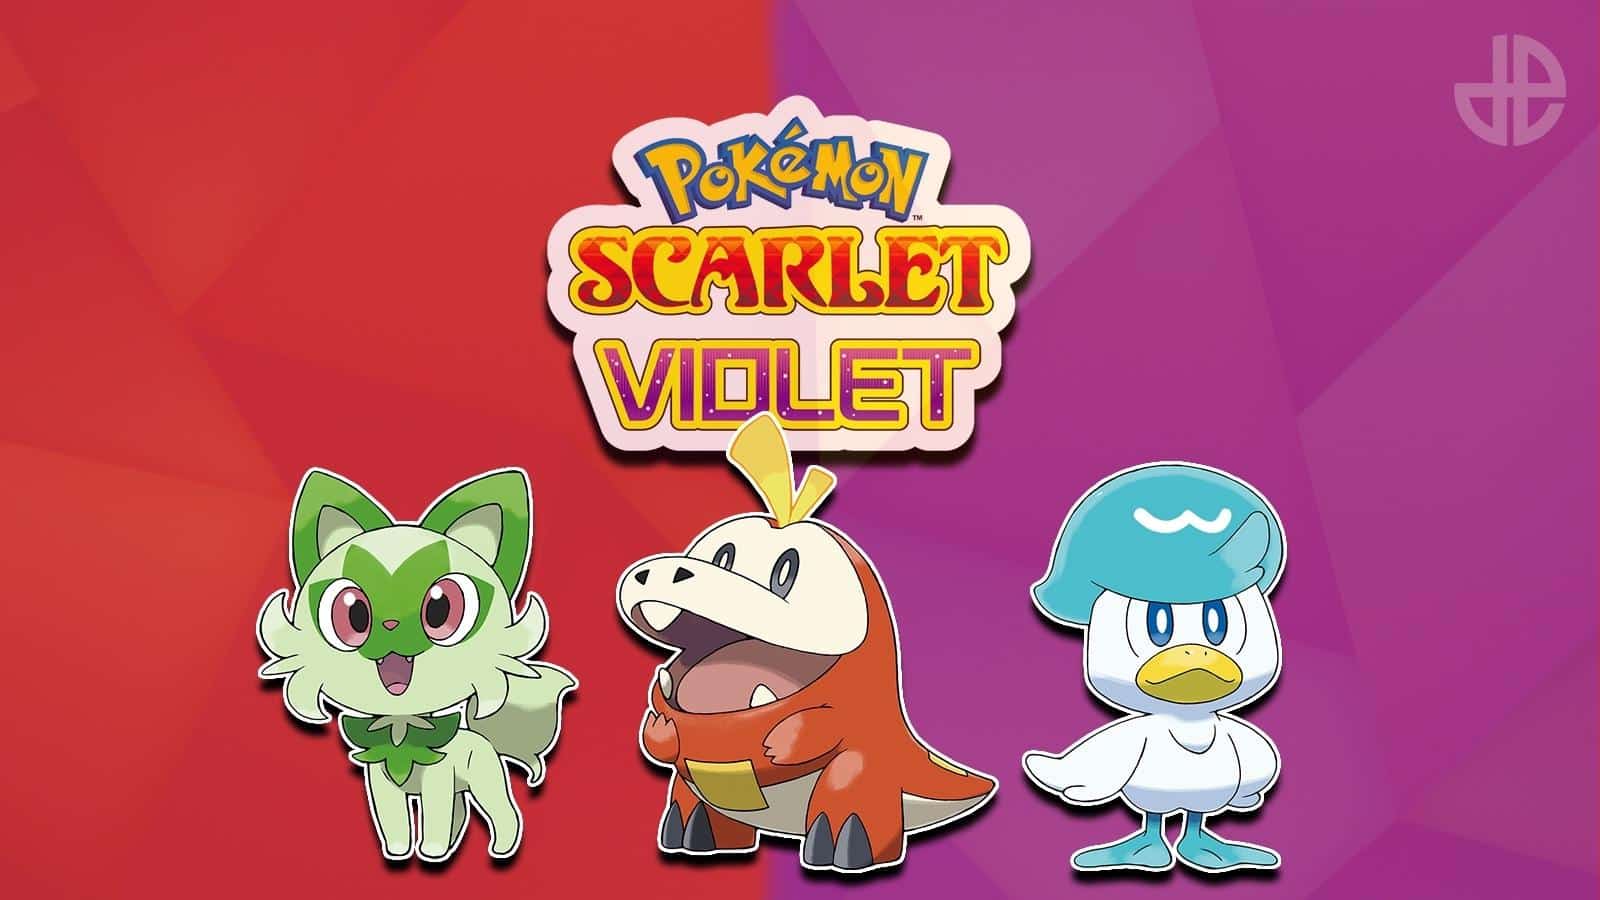 Покемон вайлет. Покедекс Скарлет Вайолет. Покемон Скарлет и Вайолет. Pokémon Scarlet и Violet. Pokemon Scarlet and Violet.